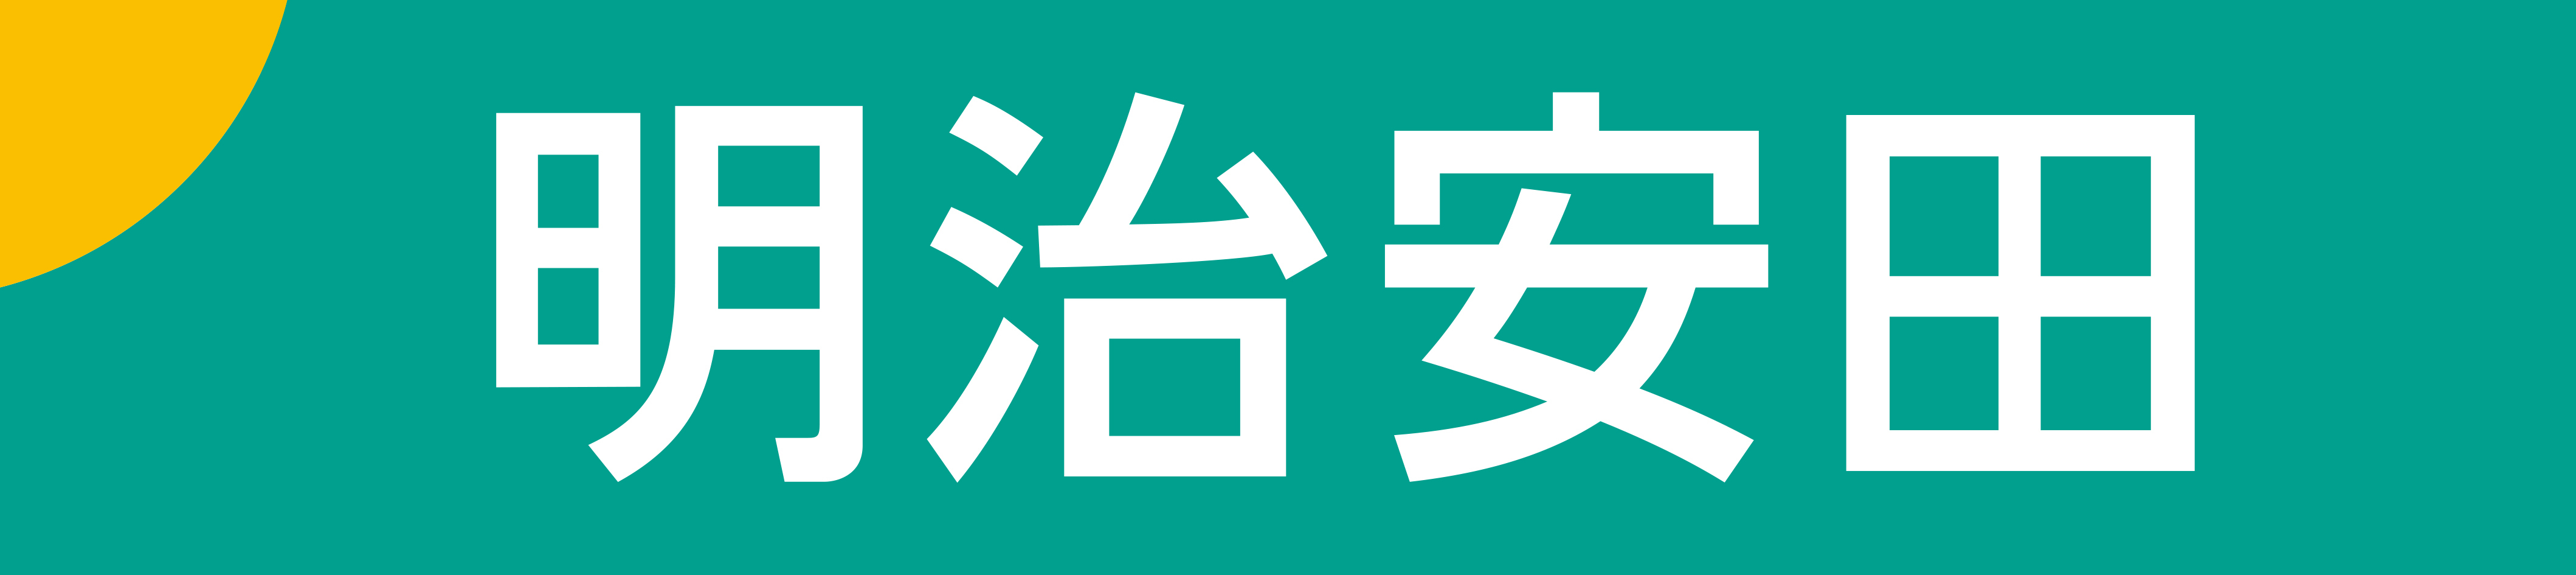 037 – Meiji Yasuda